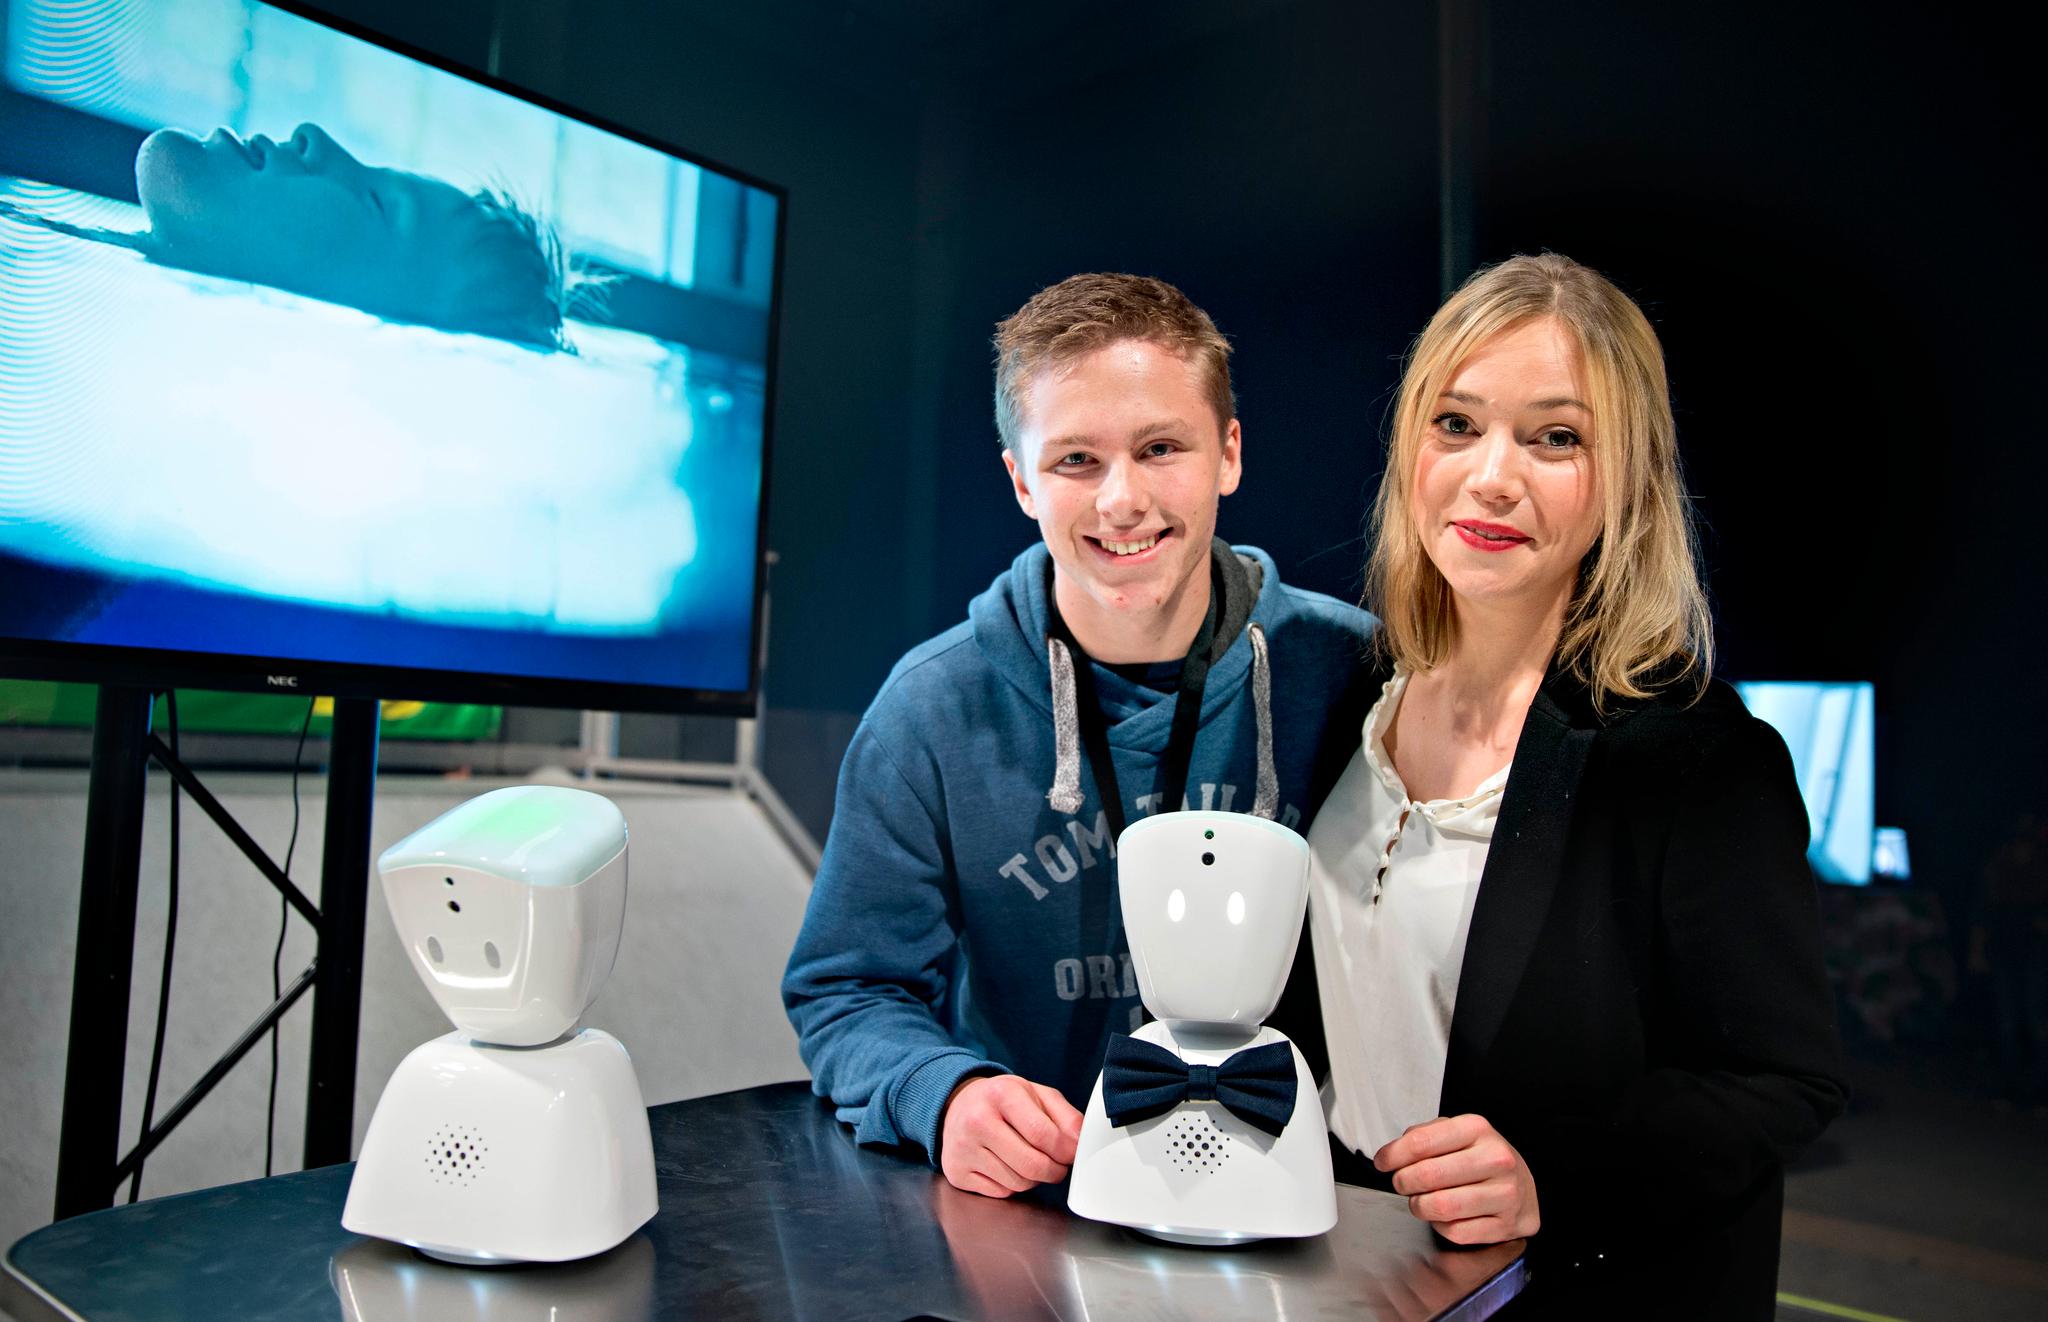 Karen Dolva er blant oppfinnerne bak roboten som skal hjelpe syke barn fra ensomheten. Oppfinnelsen gjorde at André Weiseths kompis kunne se hva som skjedde på Oslo Innovation Week på nettbrettet sitt mandag.